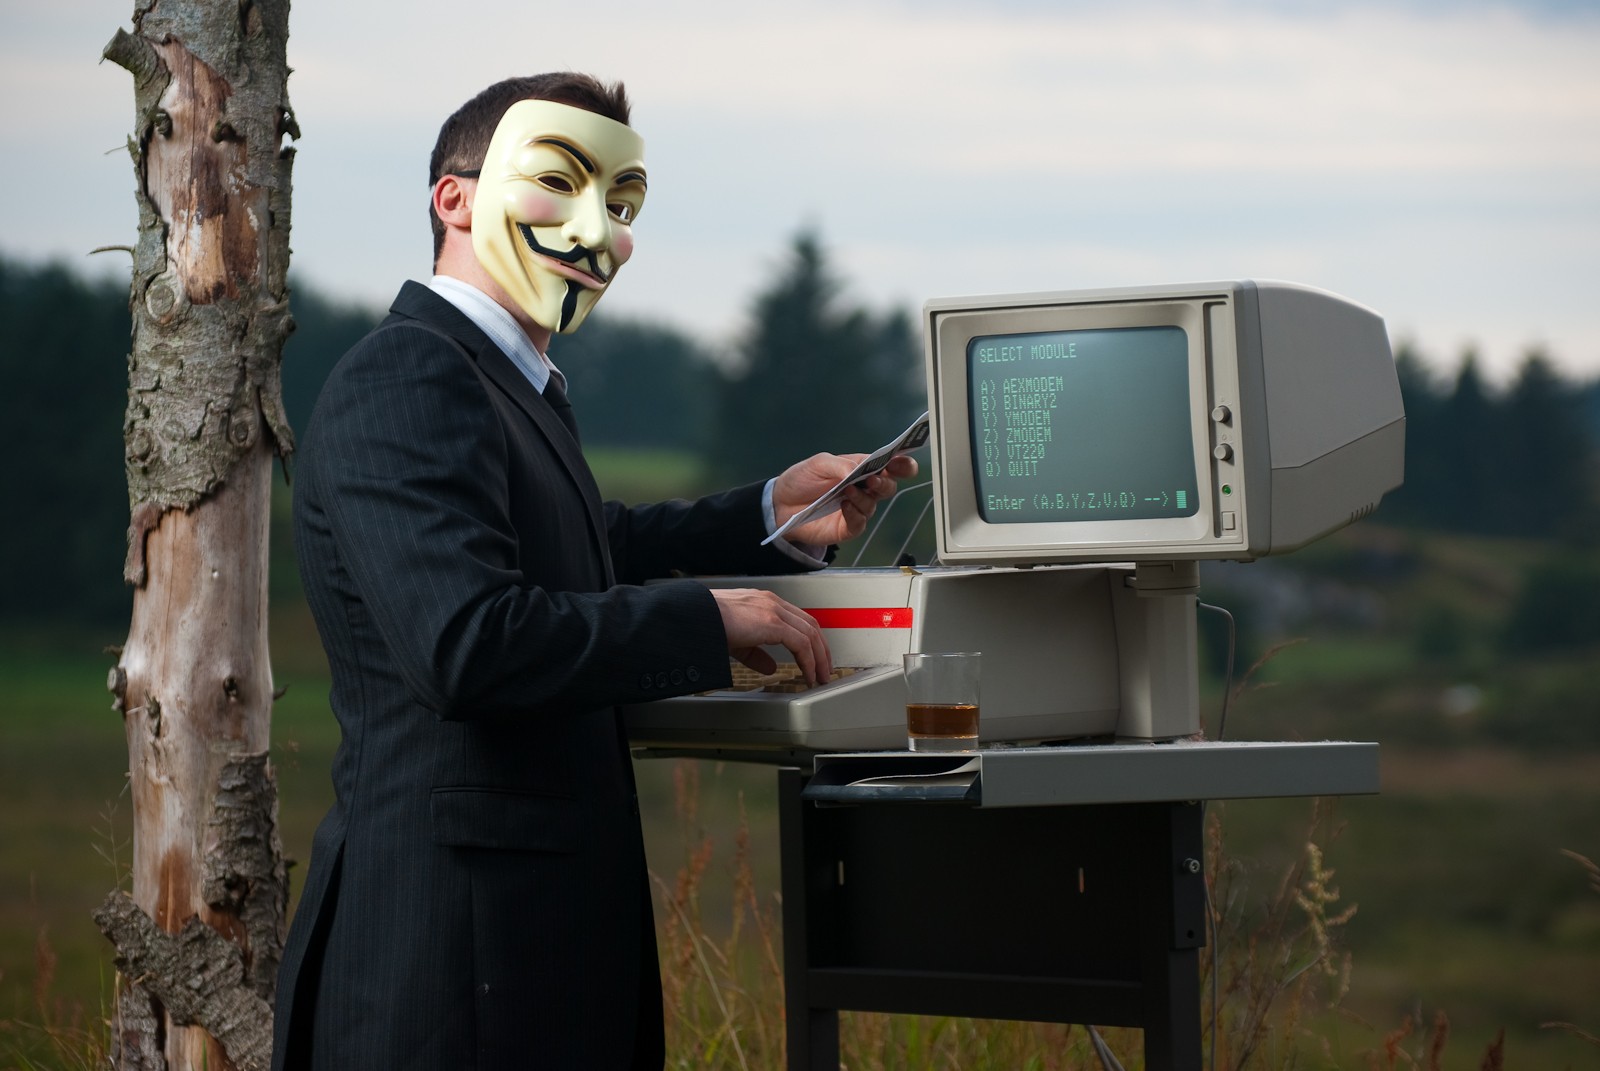 Скачать обои бесплатно Технологии, Анонимный картинка на рабочий стол ПК